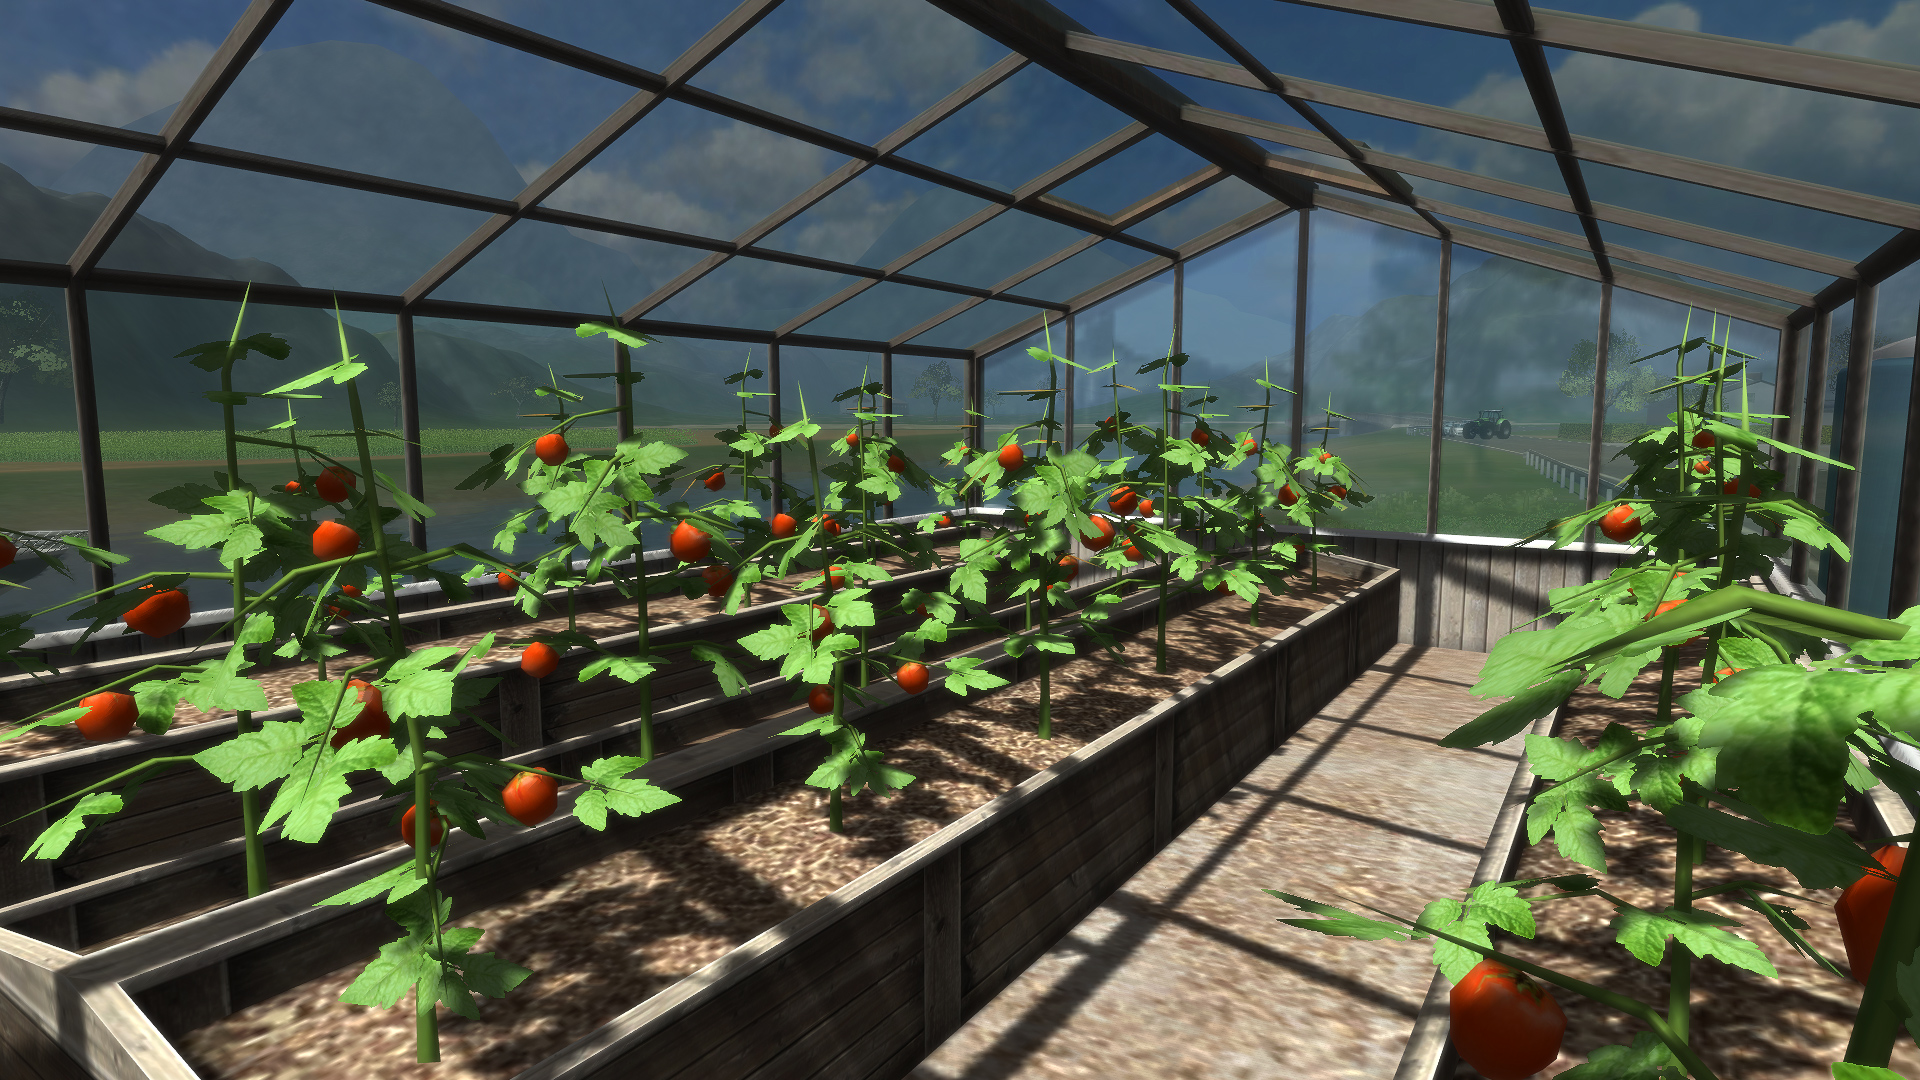 Farming Simulator 2011 - Equipment Pack 3 screenshot